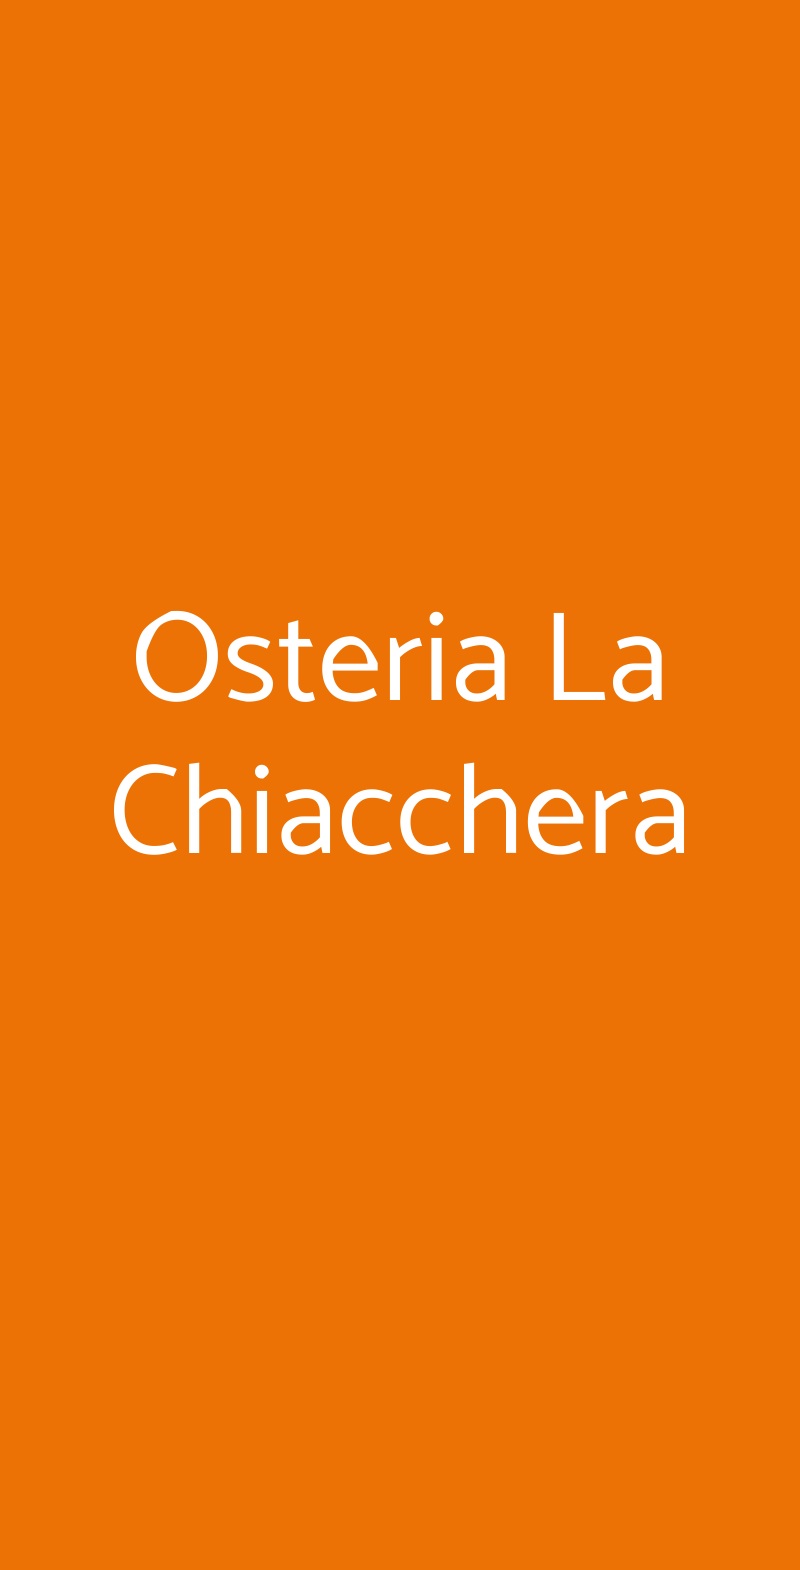 Osteria La Chiacchera Siena menù 1 pagina